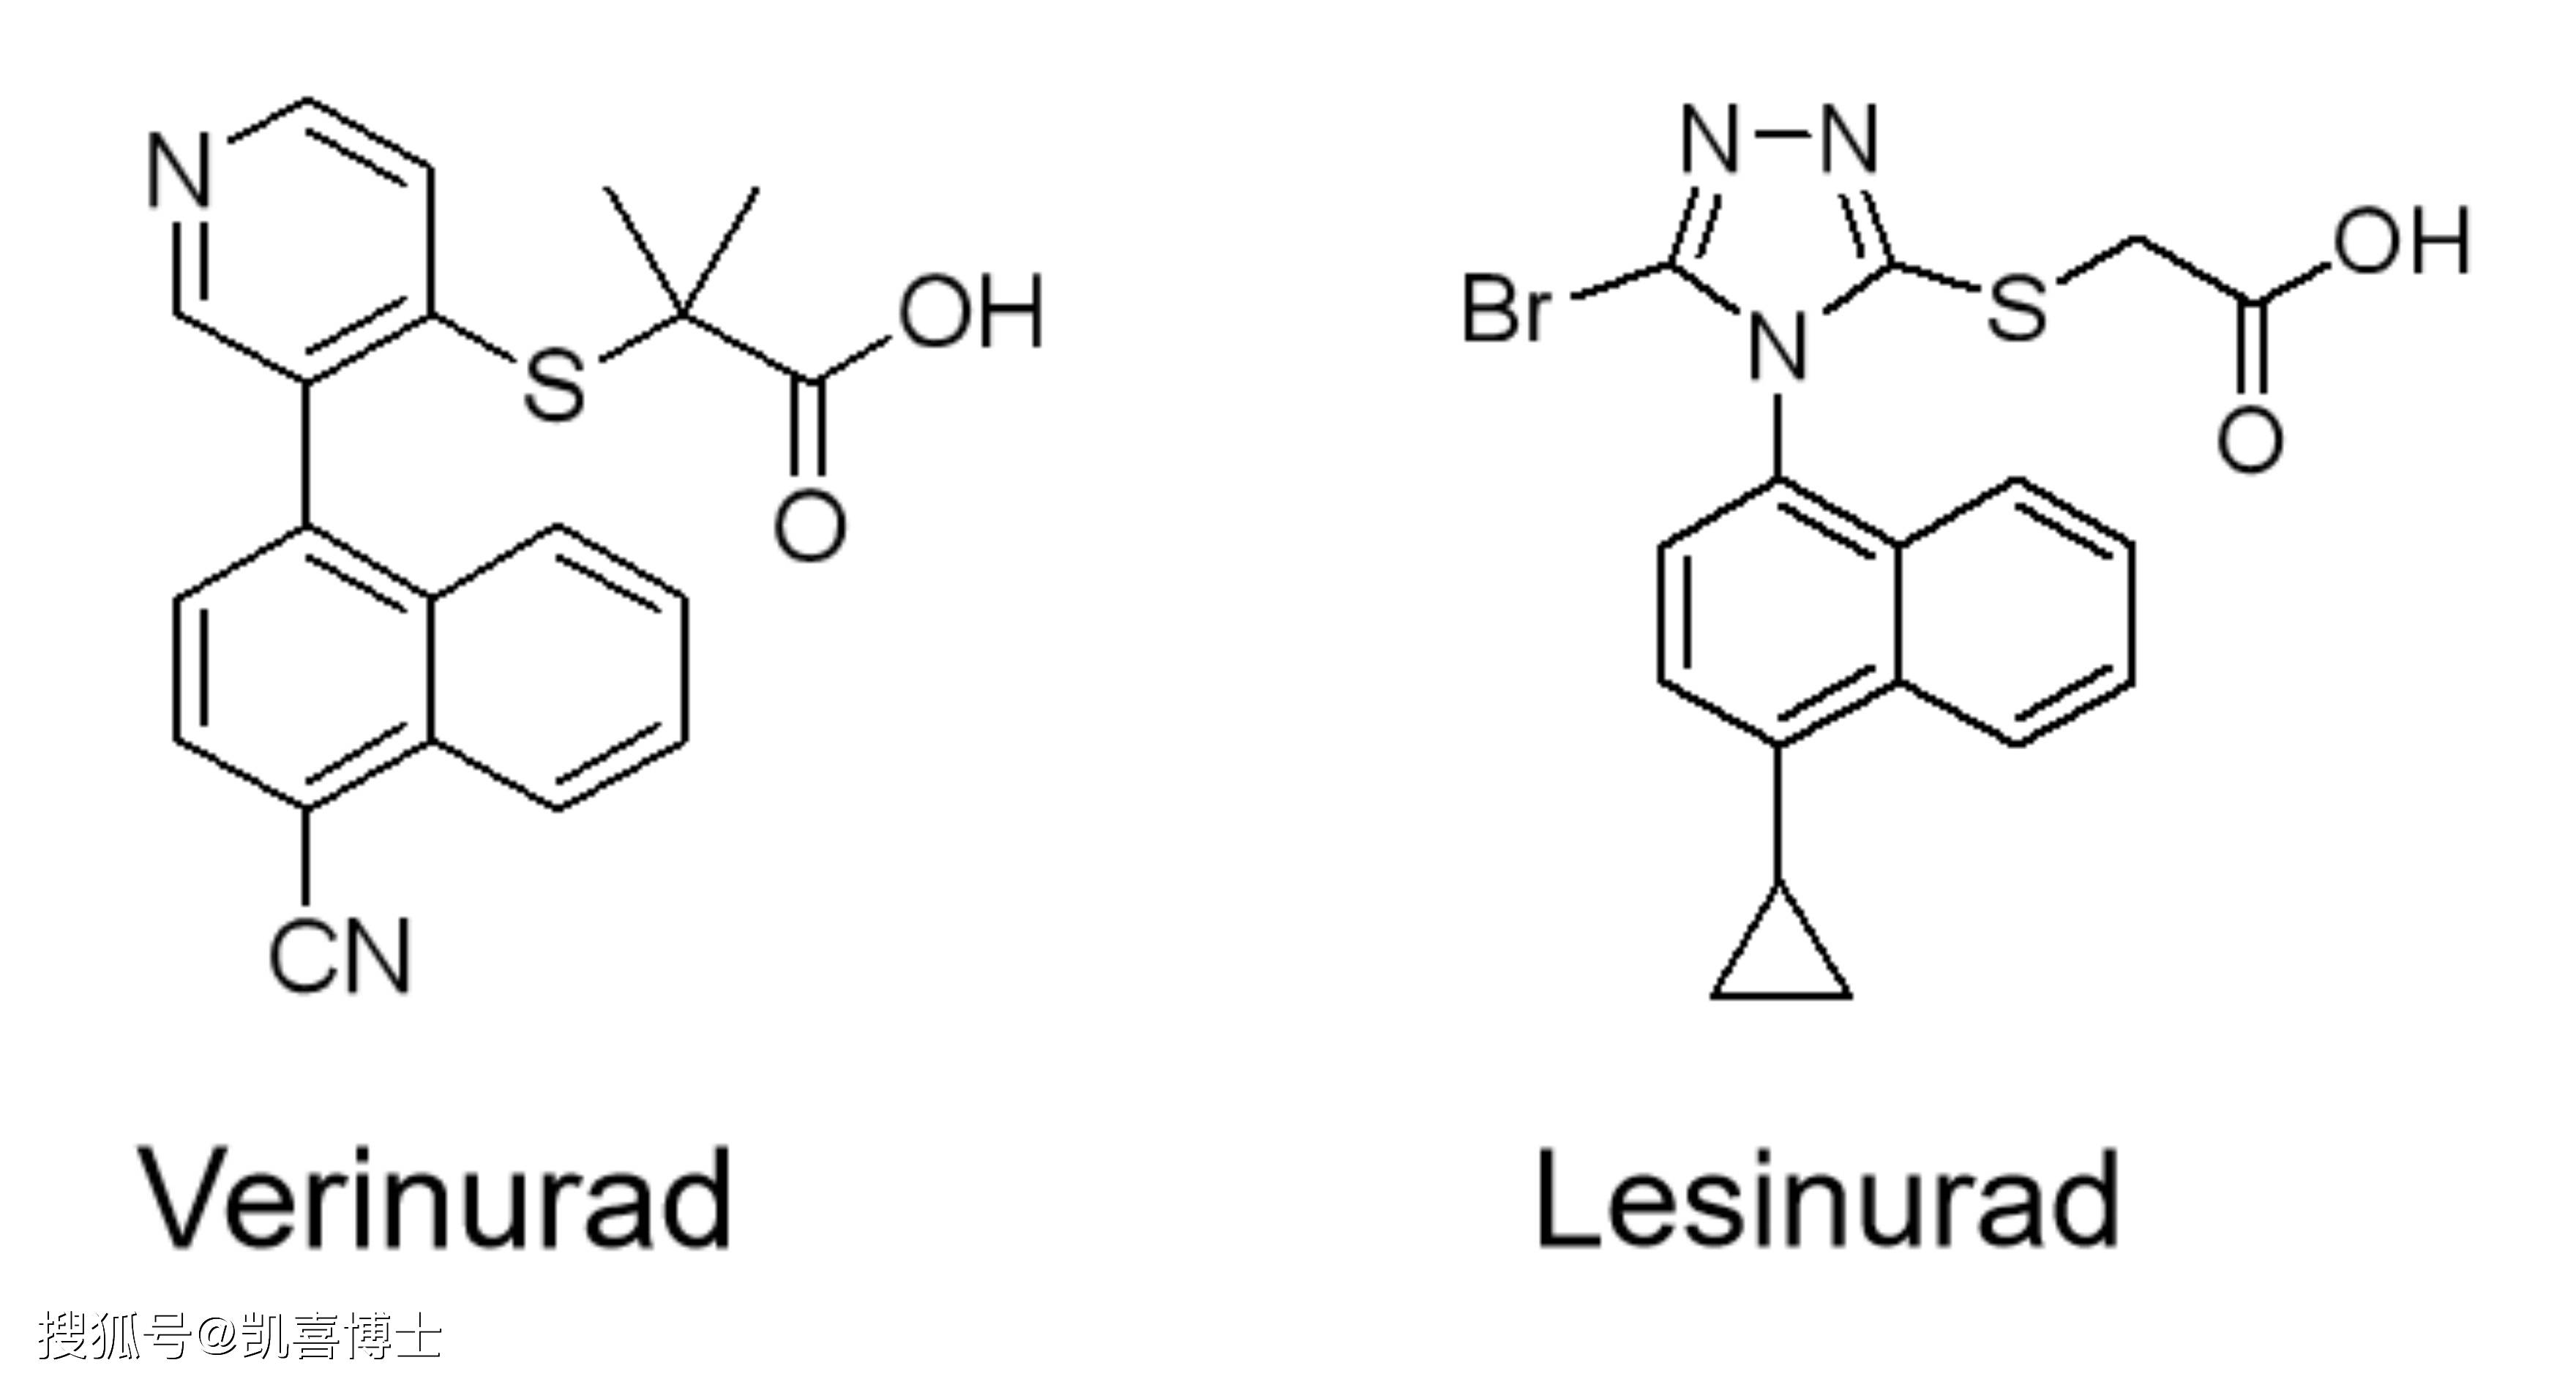 verinurad和雷西纳德太像了,这两个成分的母核结构与活性基团很类似